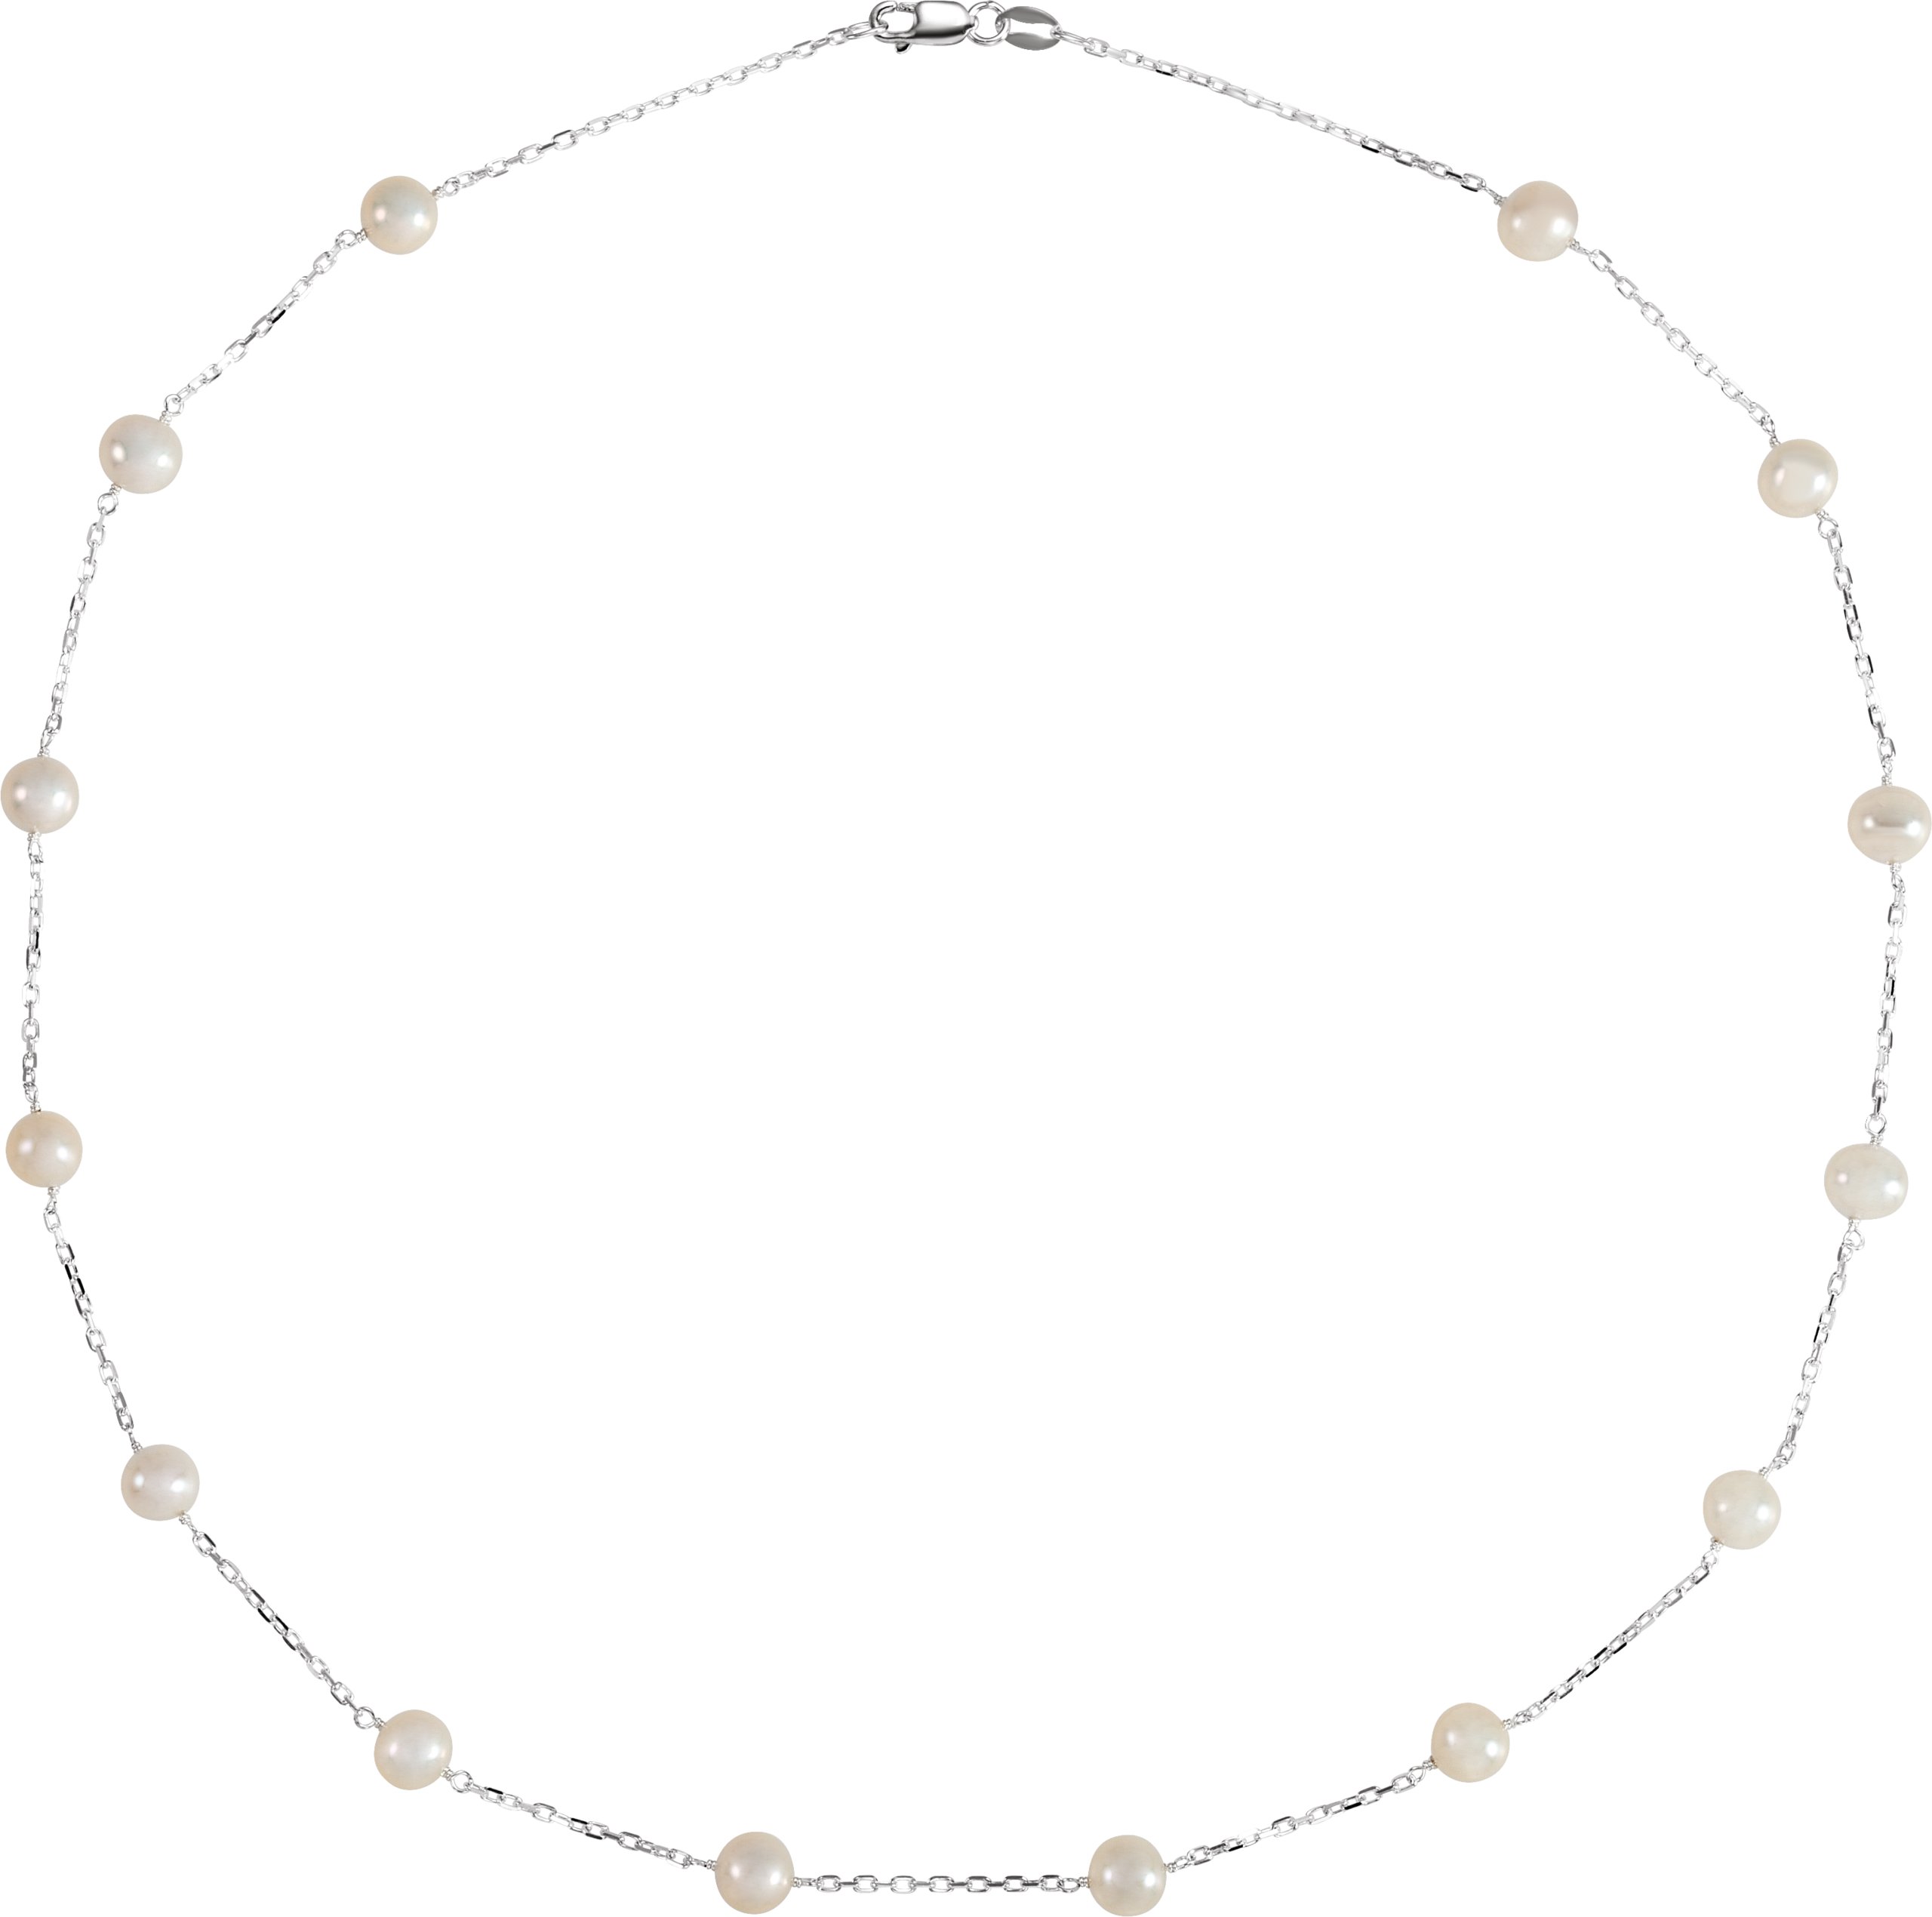 Pearl Station Necklace or Bracelet